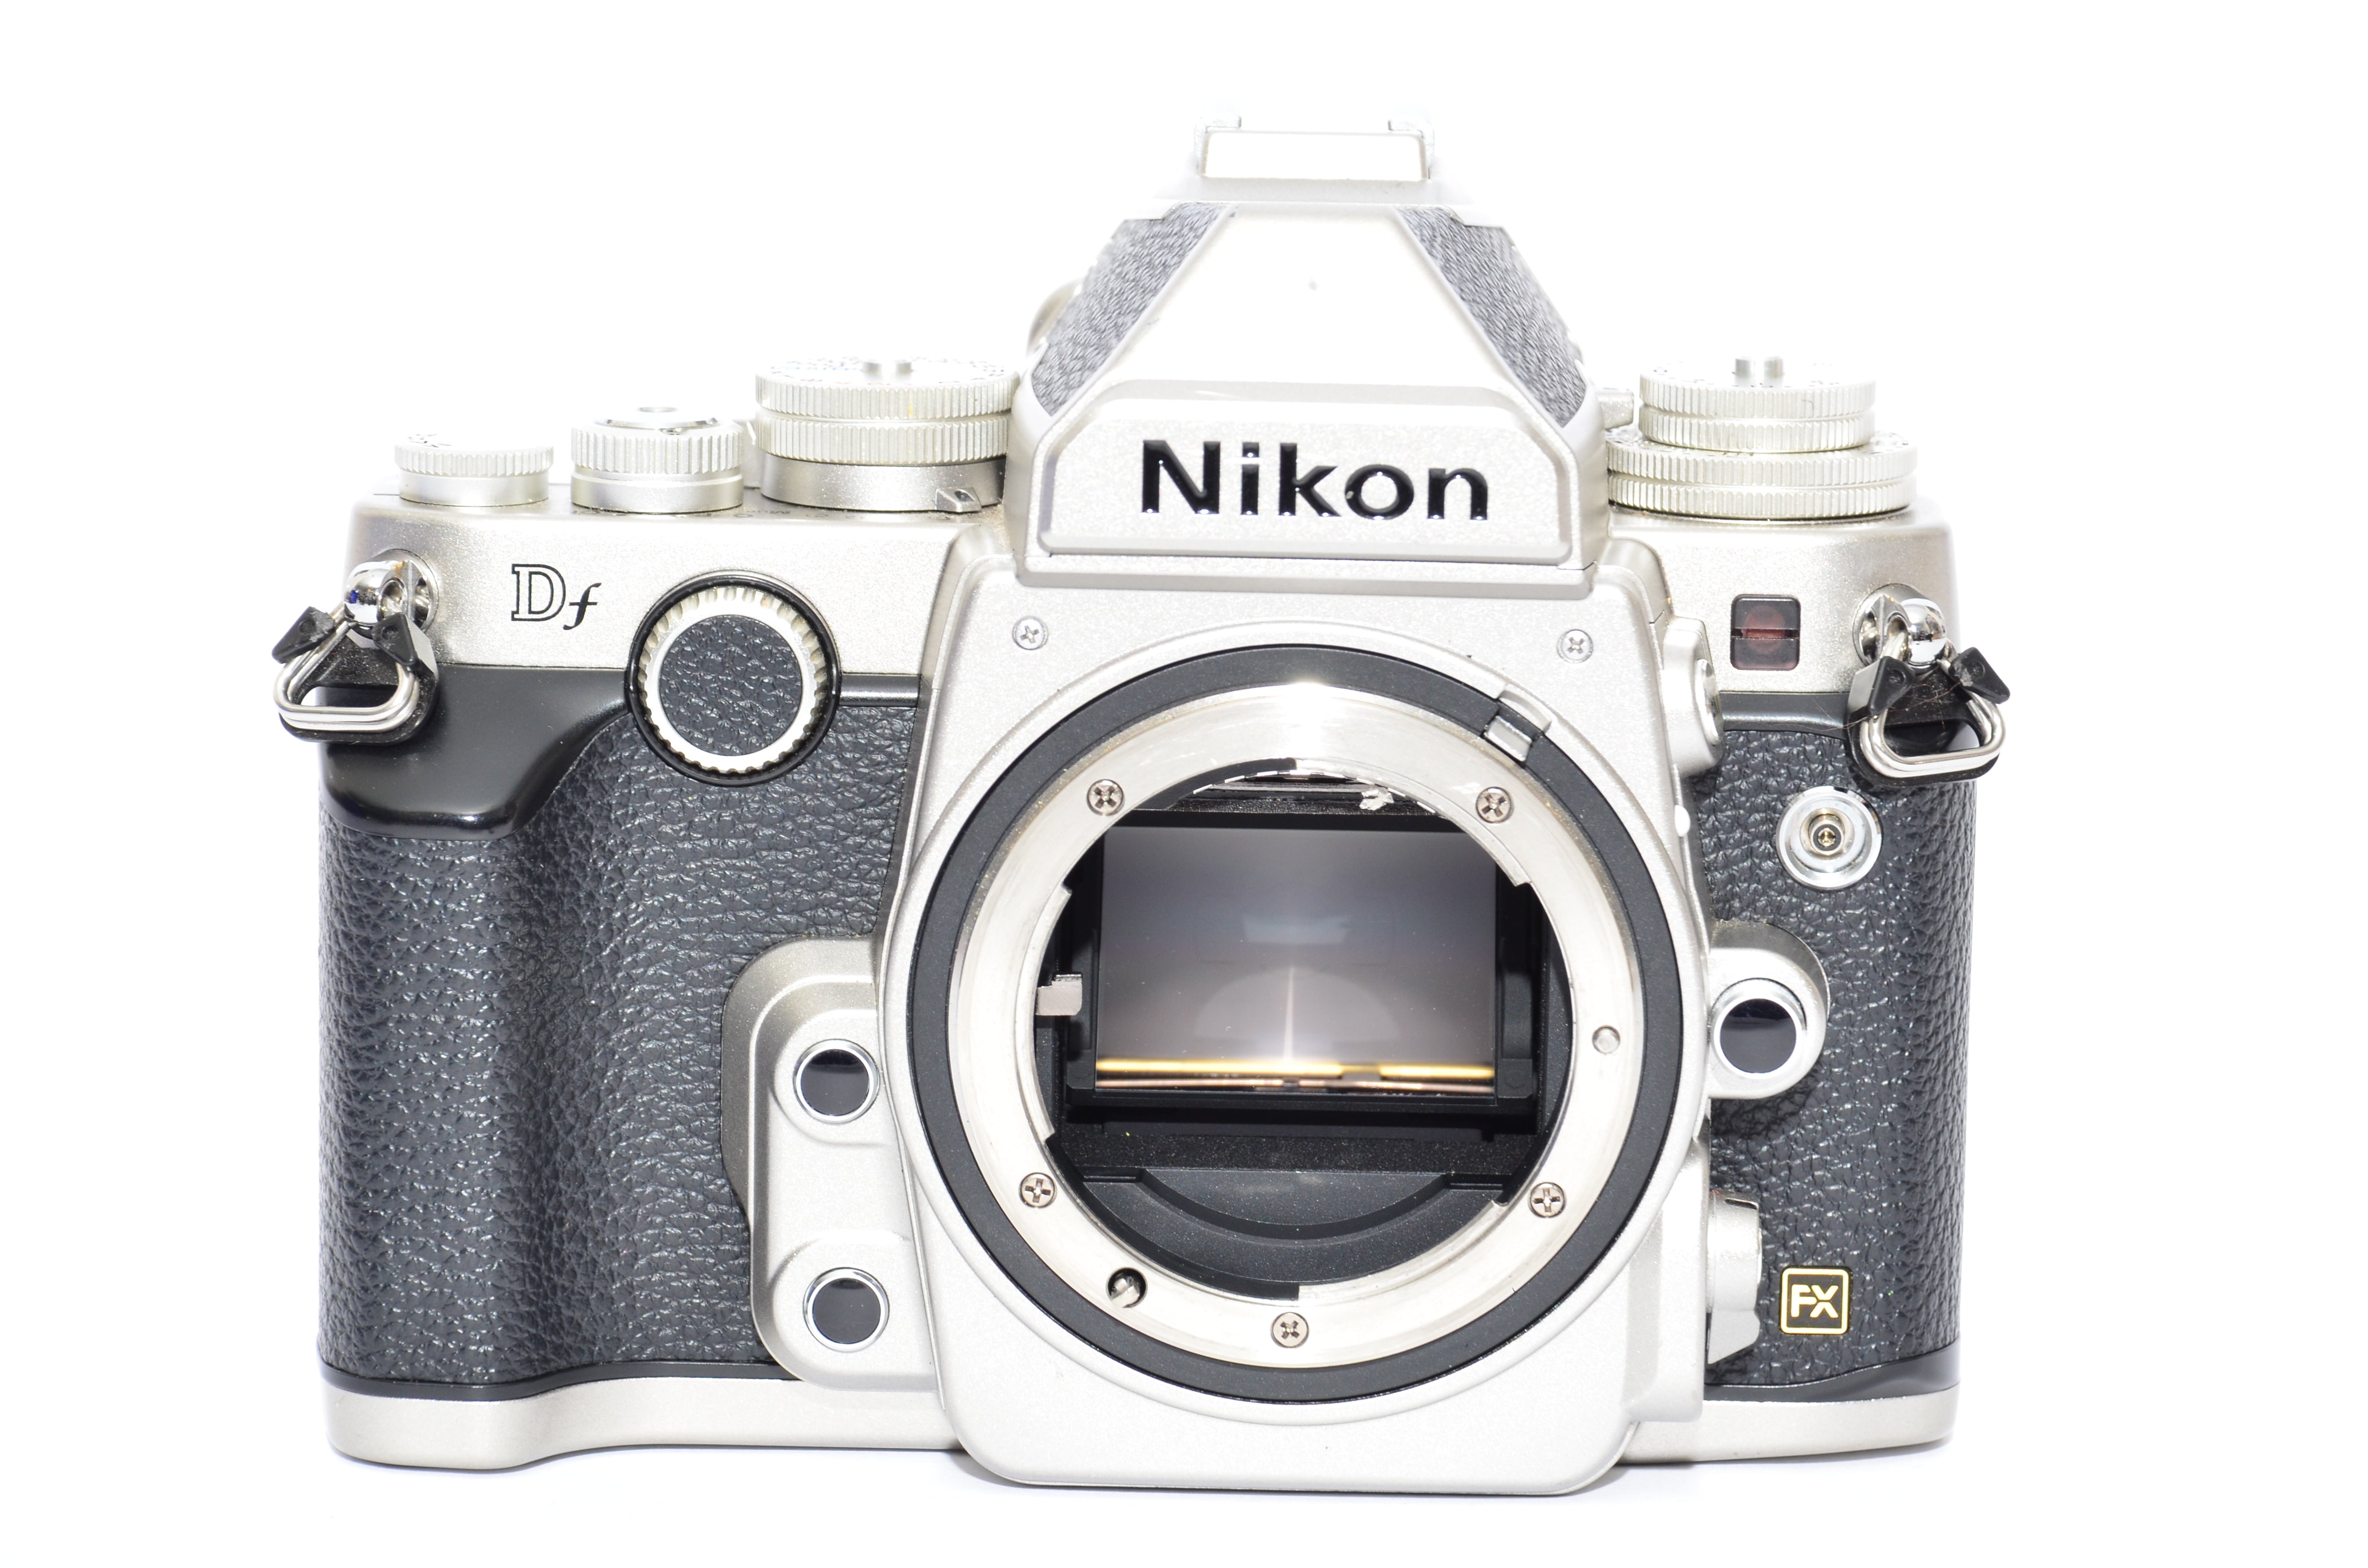 Used Nikon DF DSLR Camera - Silver Body